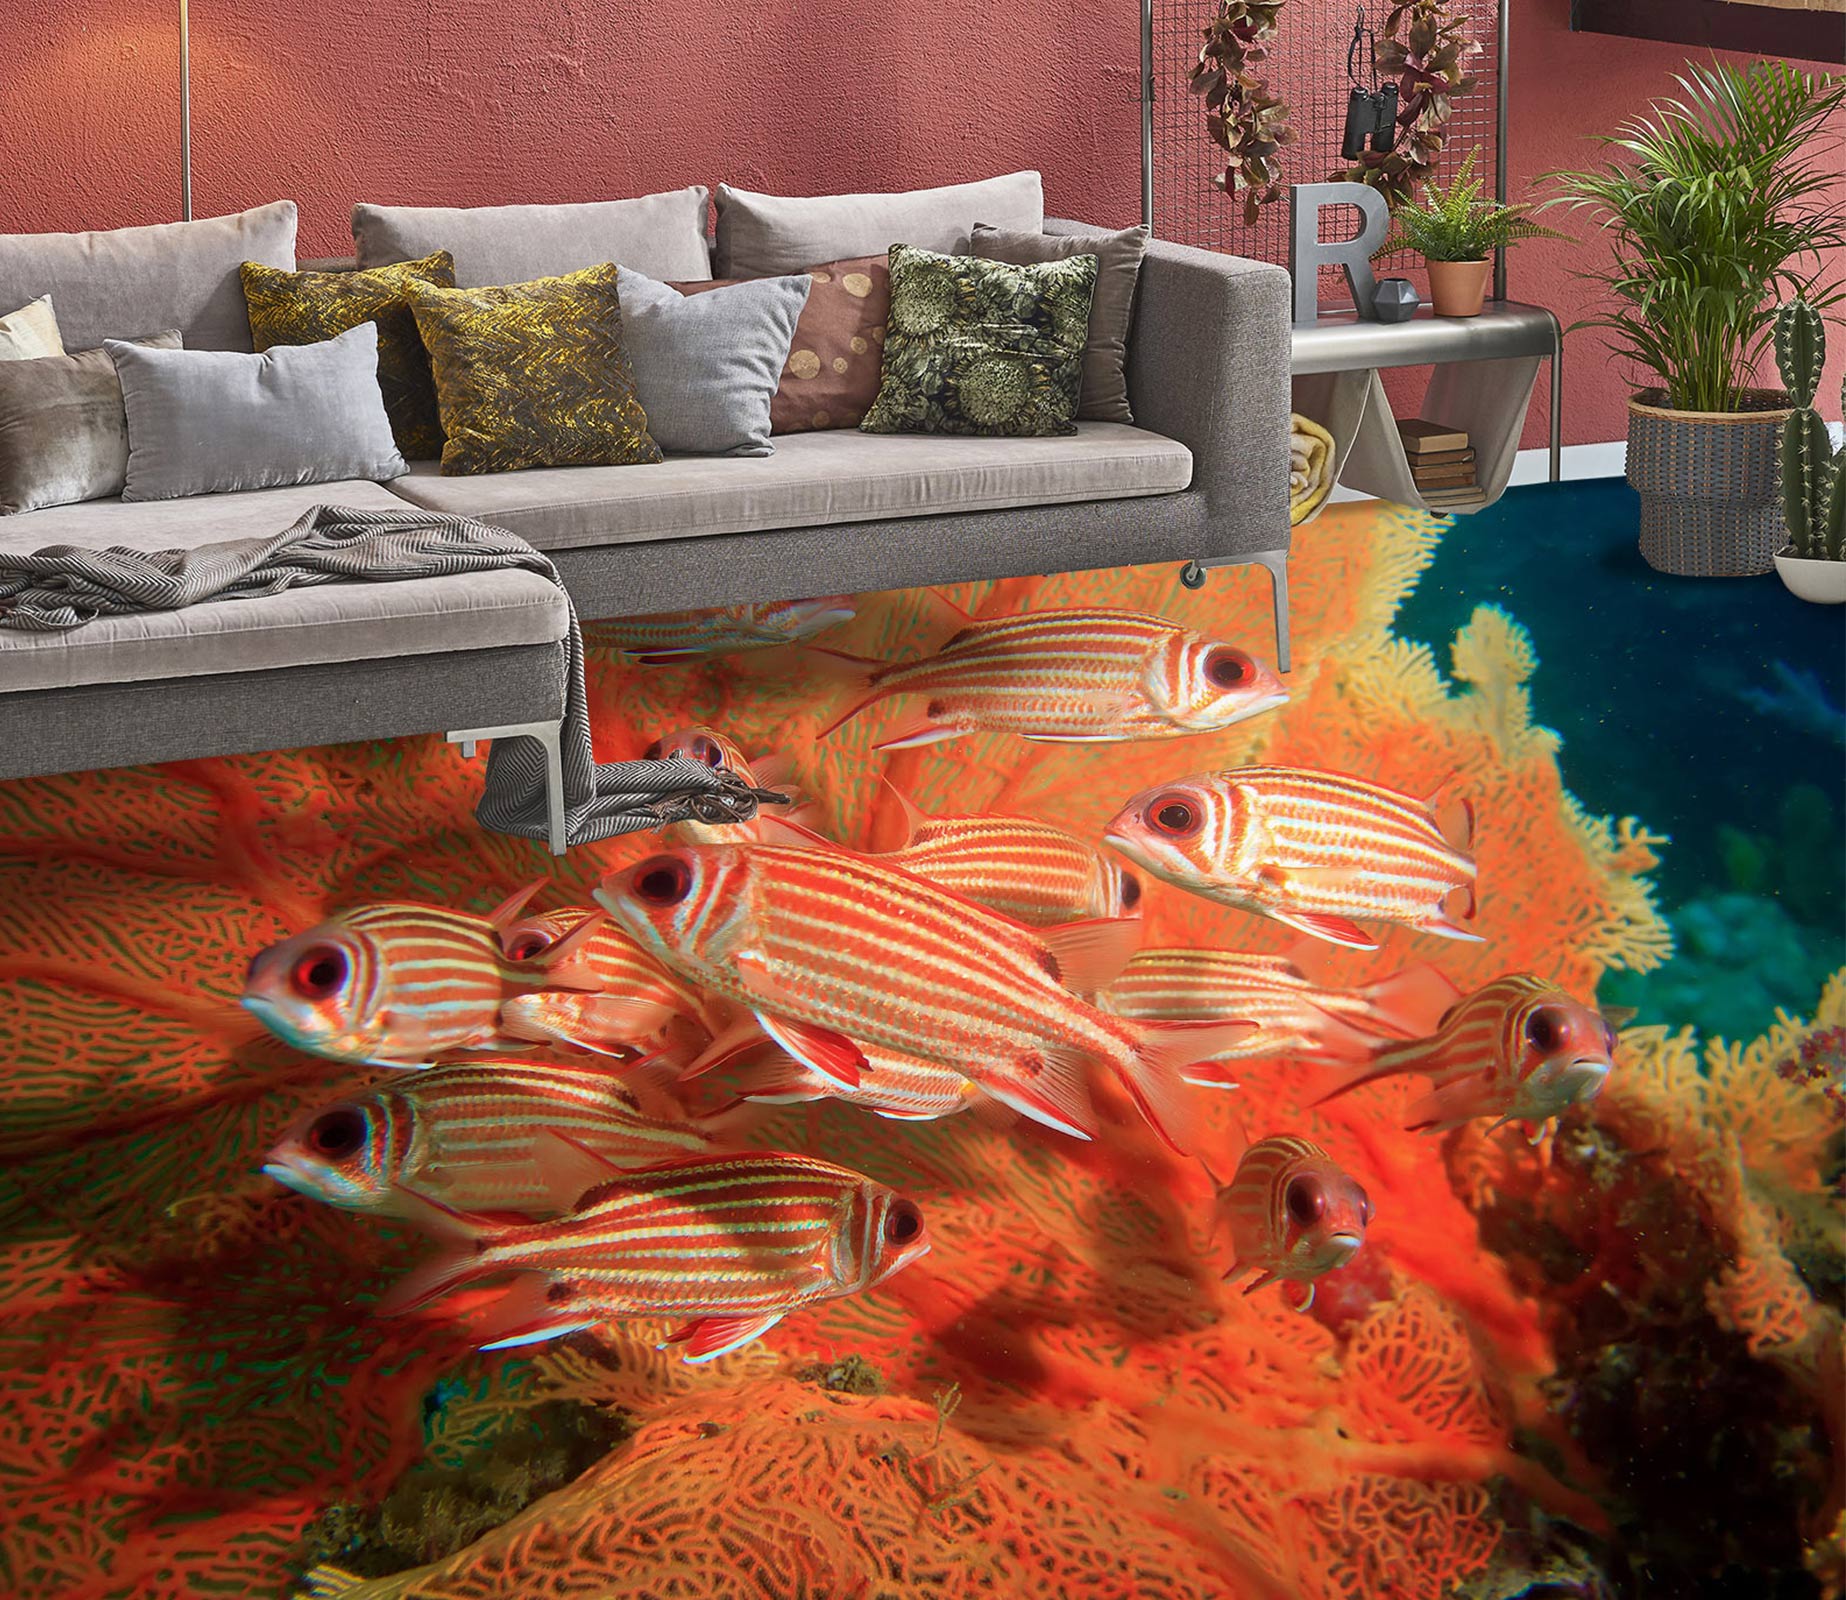 3D Red Striped Fish 610 Floor Mural  Wallpaper Murals Rug & Mat Print Epoxy waterproof bath floor